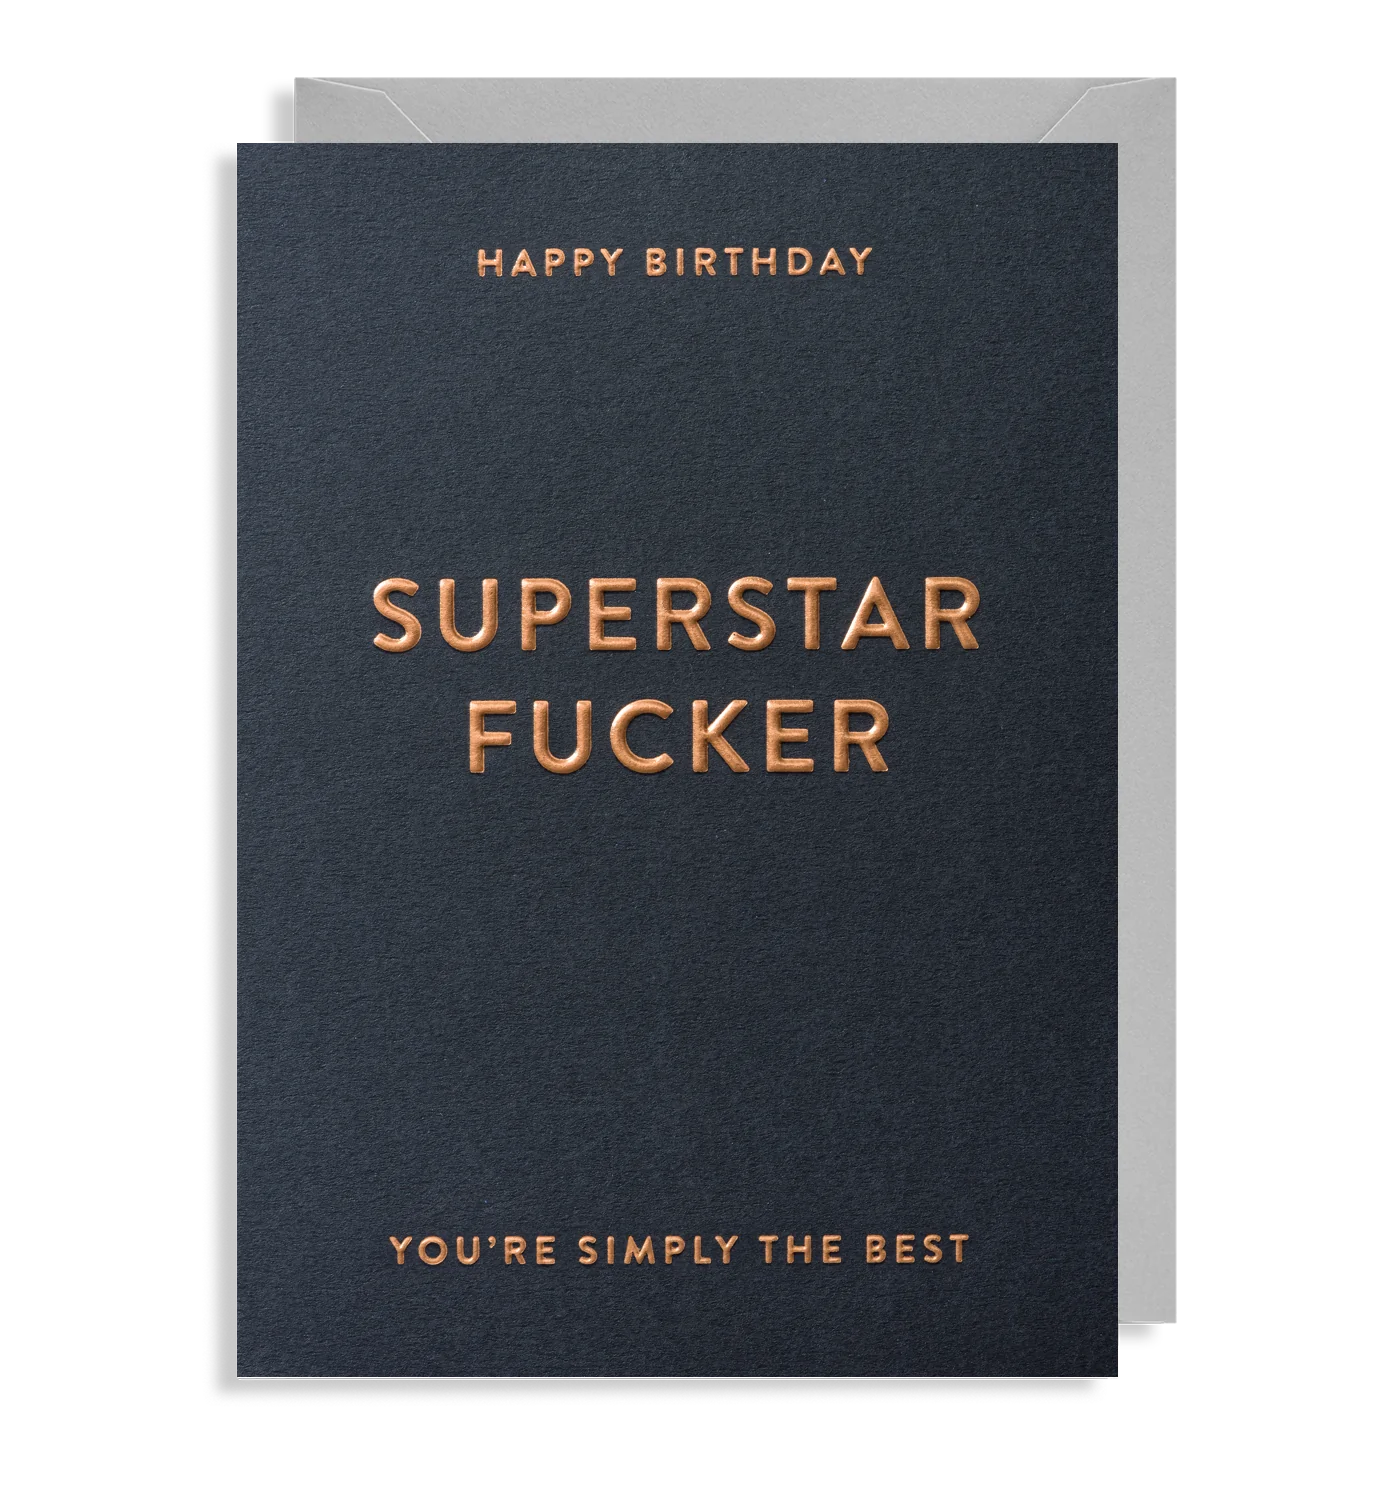 Superstar Fucker Birthday Card